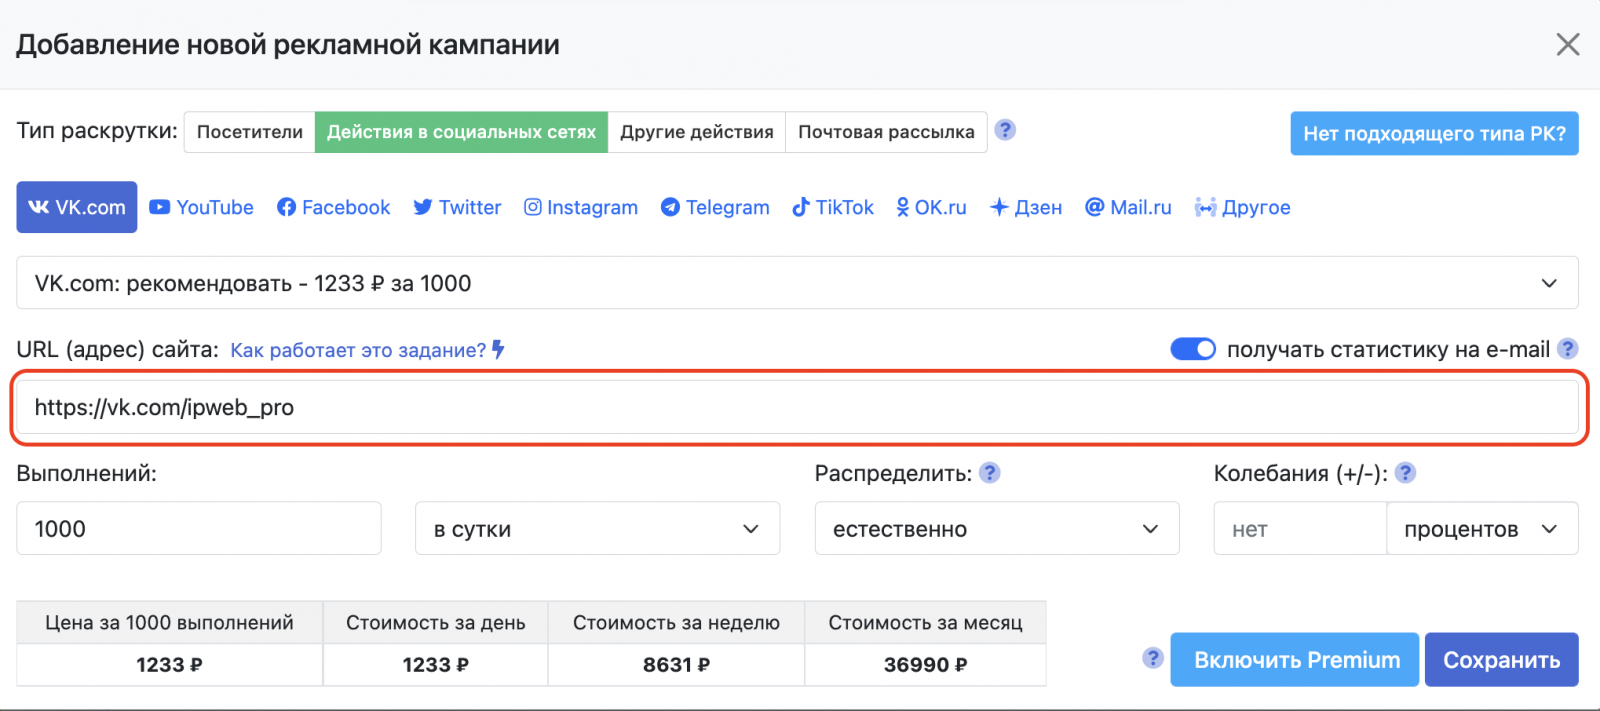 Добавление адреса сообщества в кампанию по раскрутке ВКонтакте через репосты